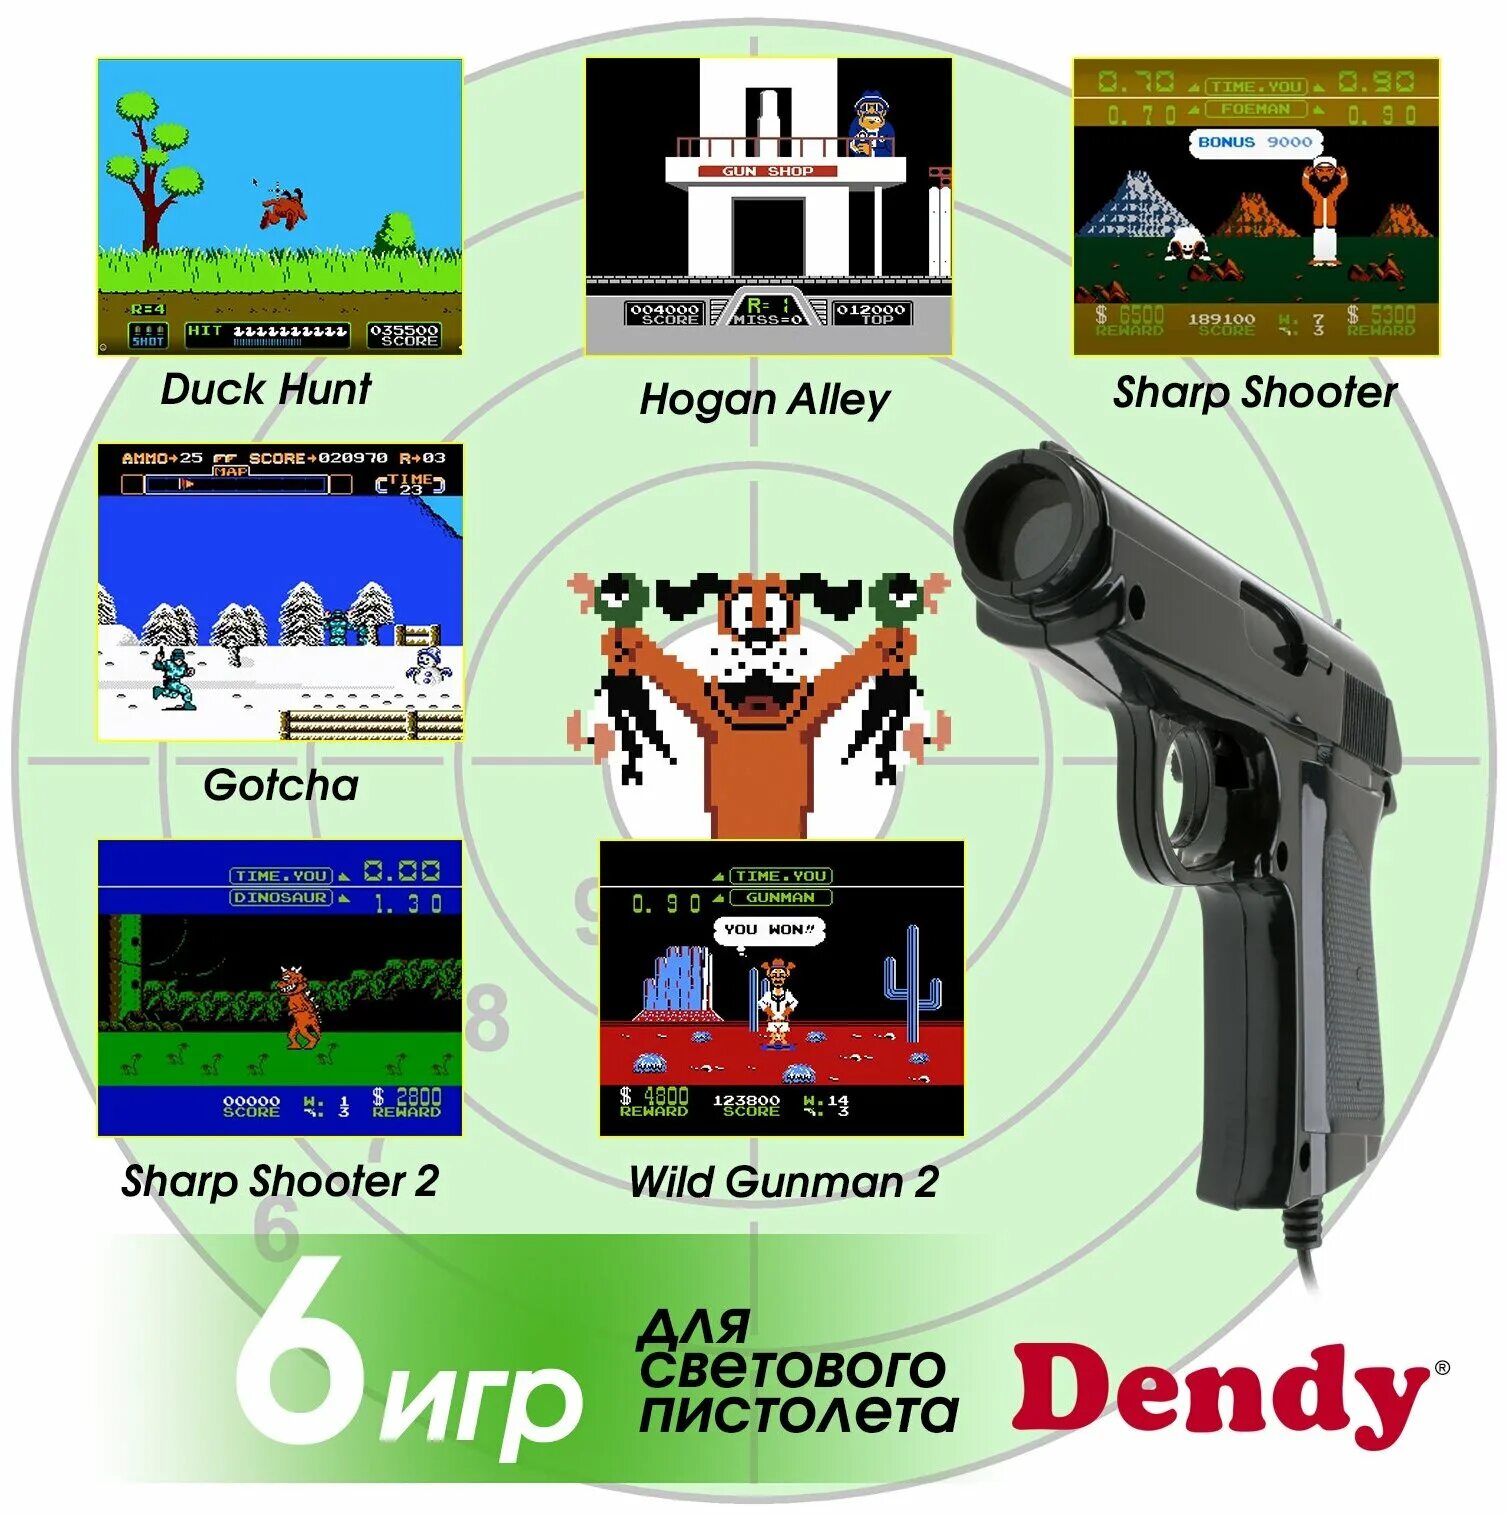 Dendy Dream 300 встроенных игр (8-бит) / ретро консоль Денди / для телевизора. Игровая консоль Dendy Dream - [300 игр]. Ретро консоль Денди 300 встроенных игр. Денди приставка встроенные игры